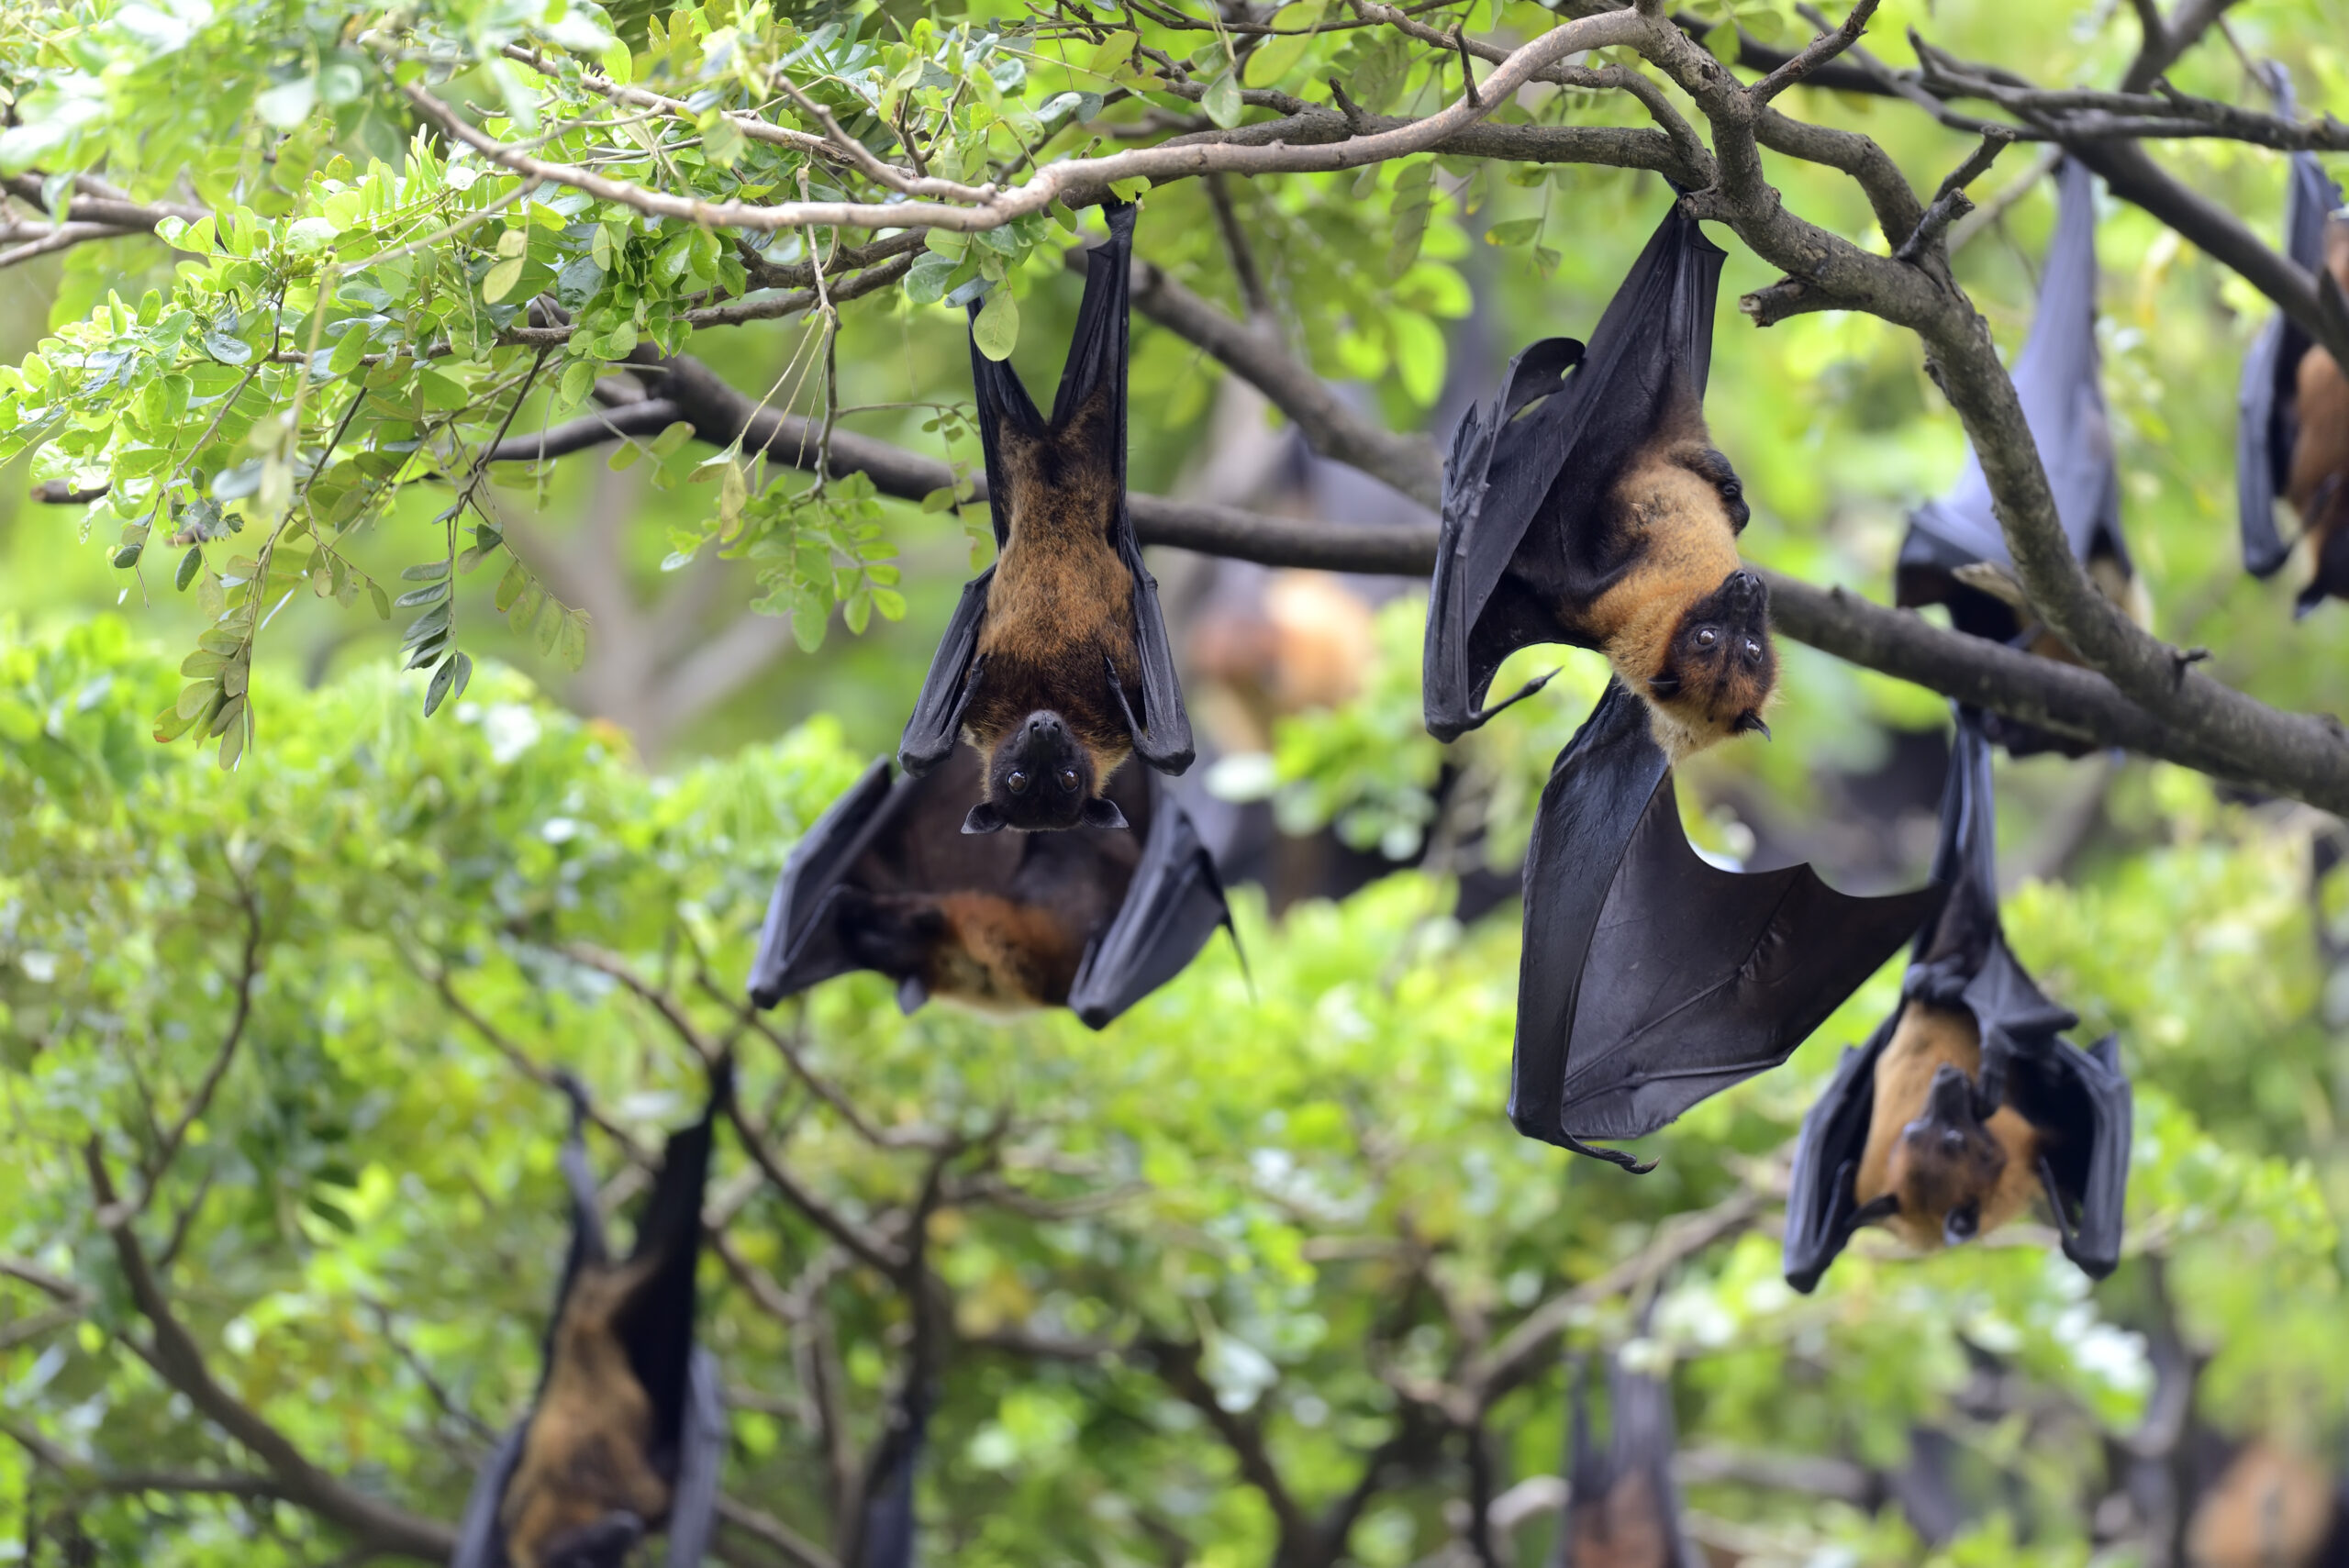 muitos especialistas acreditam que o vírus que causou a pandemia de Covid-19 surgiu dos morcegos